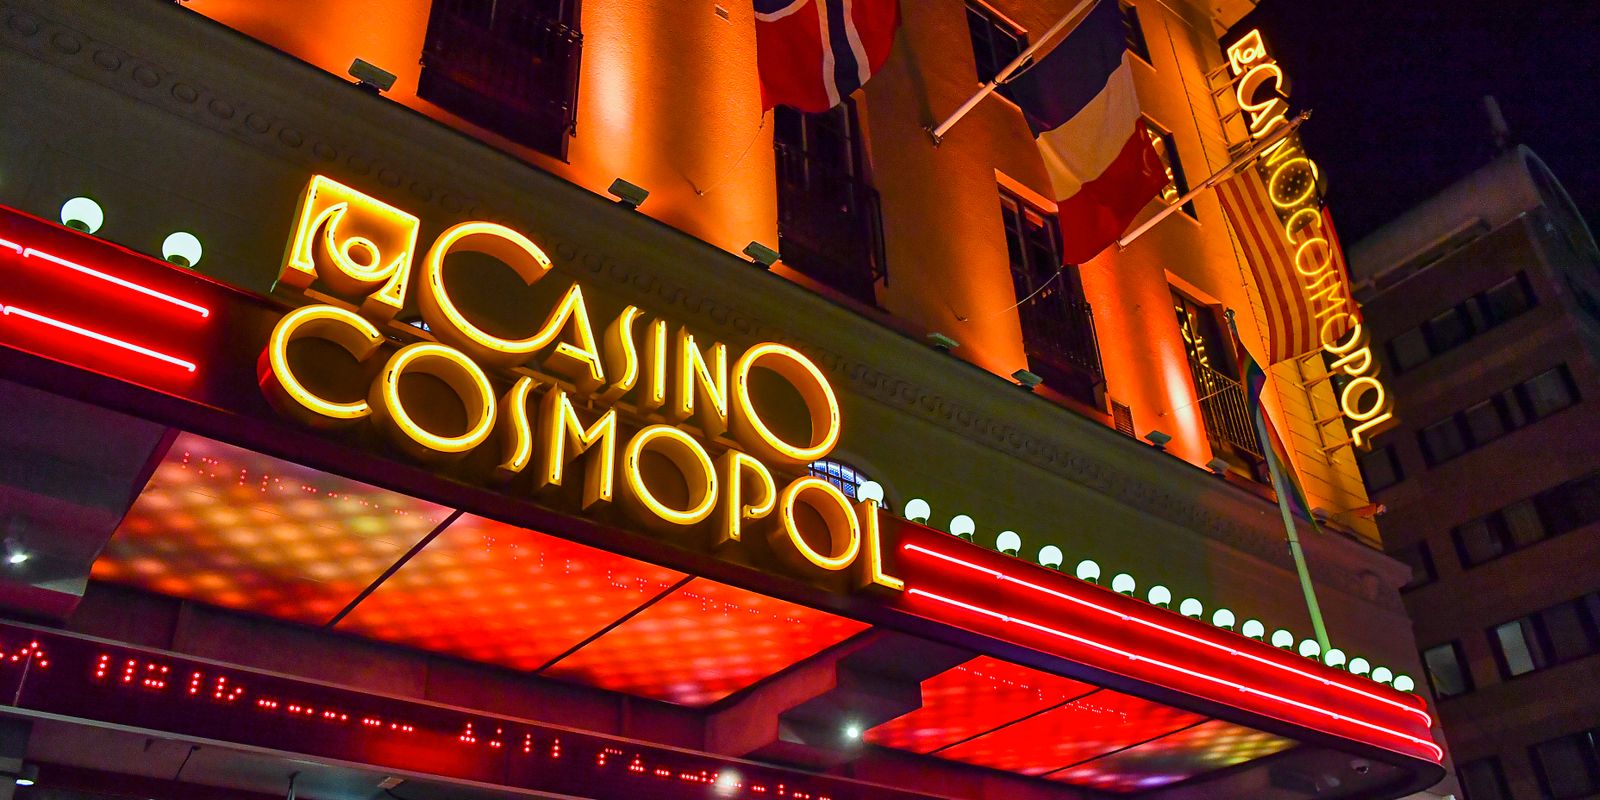 regeringen vill stänga sveriges sista statliga kasino